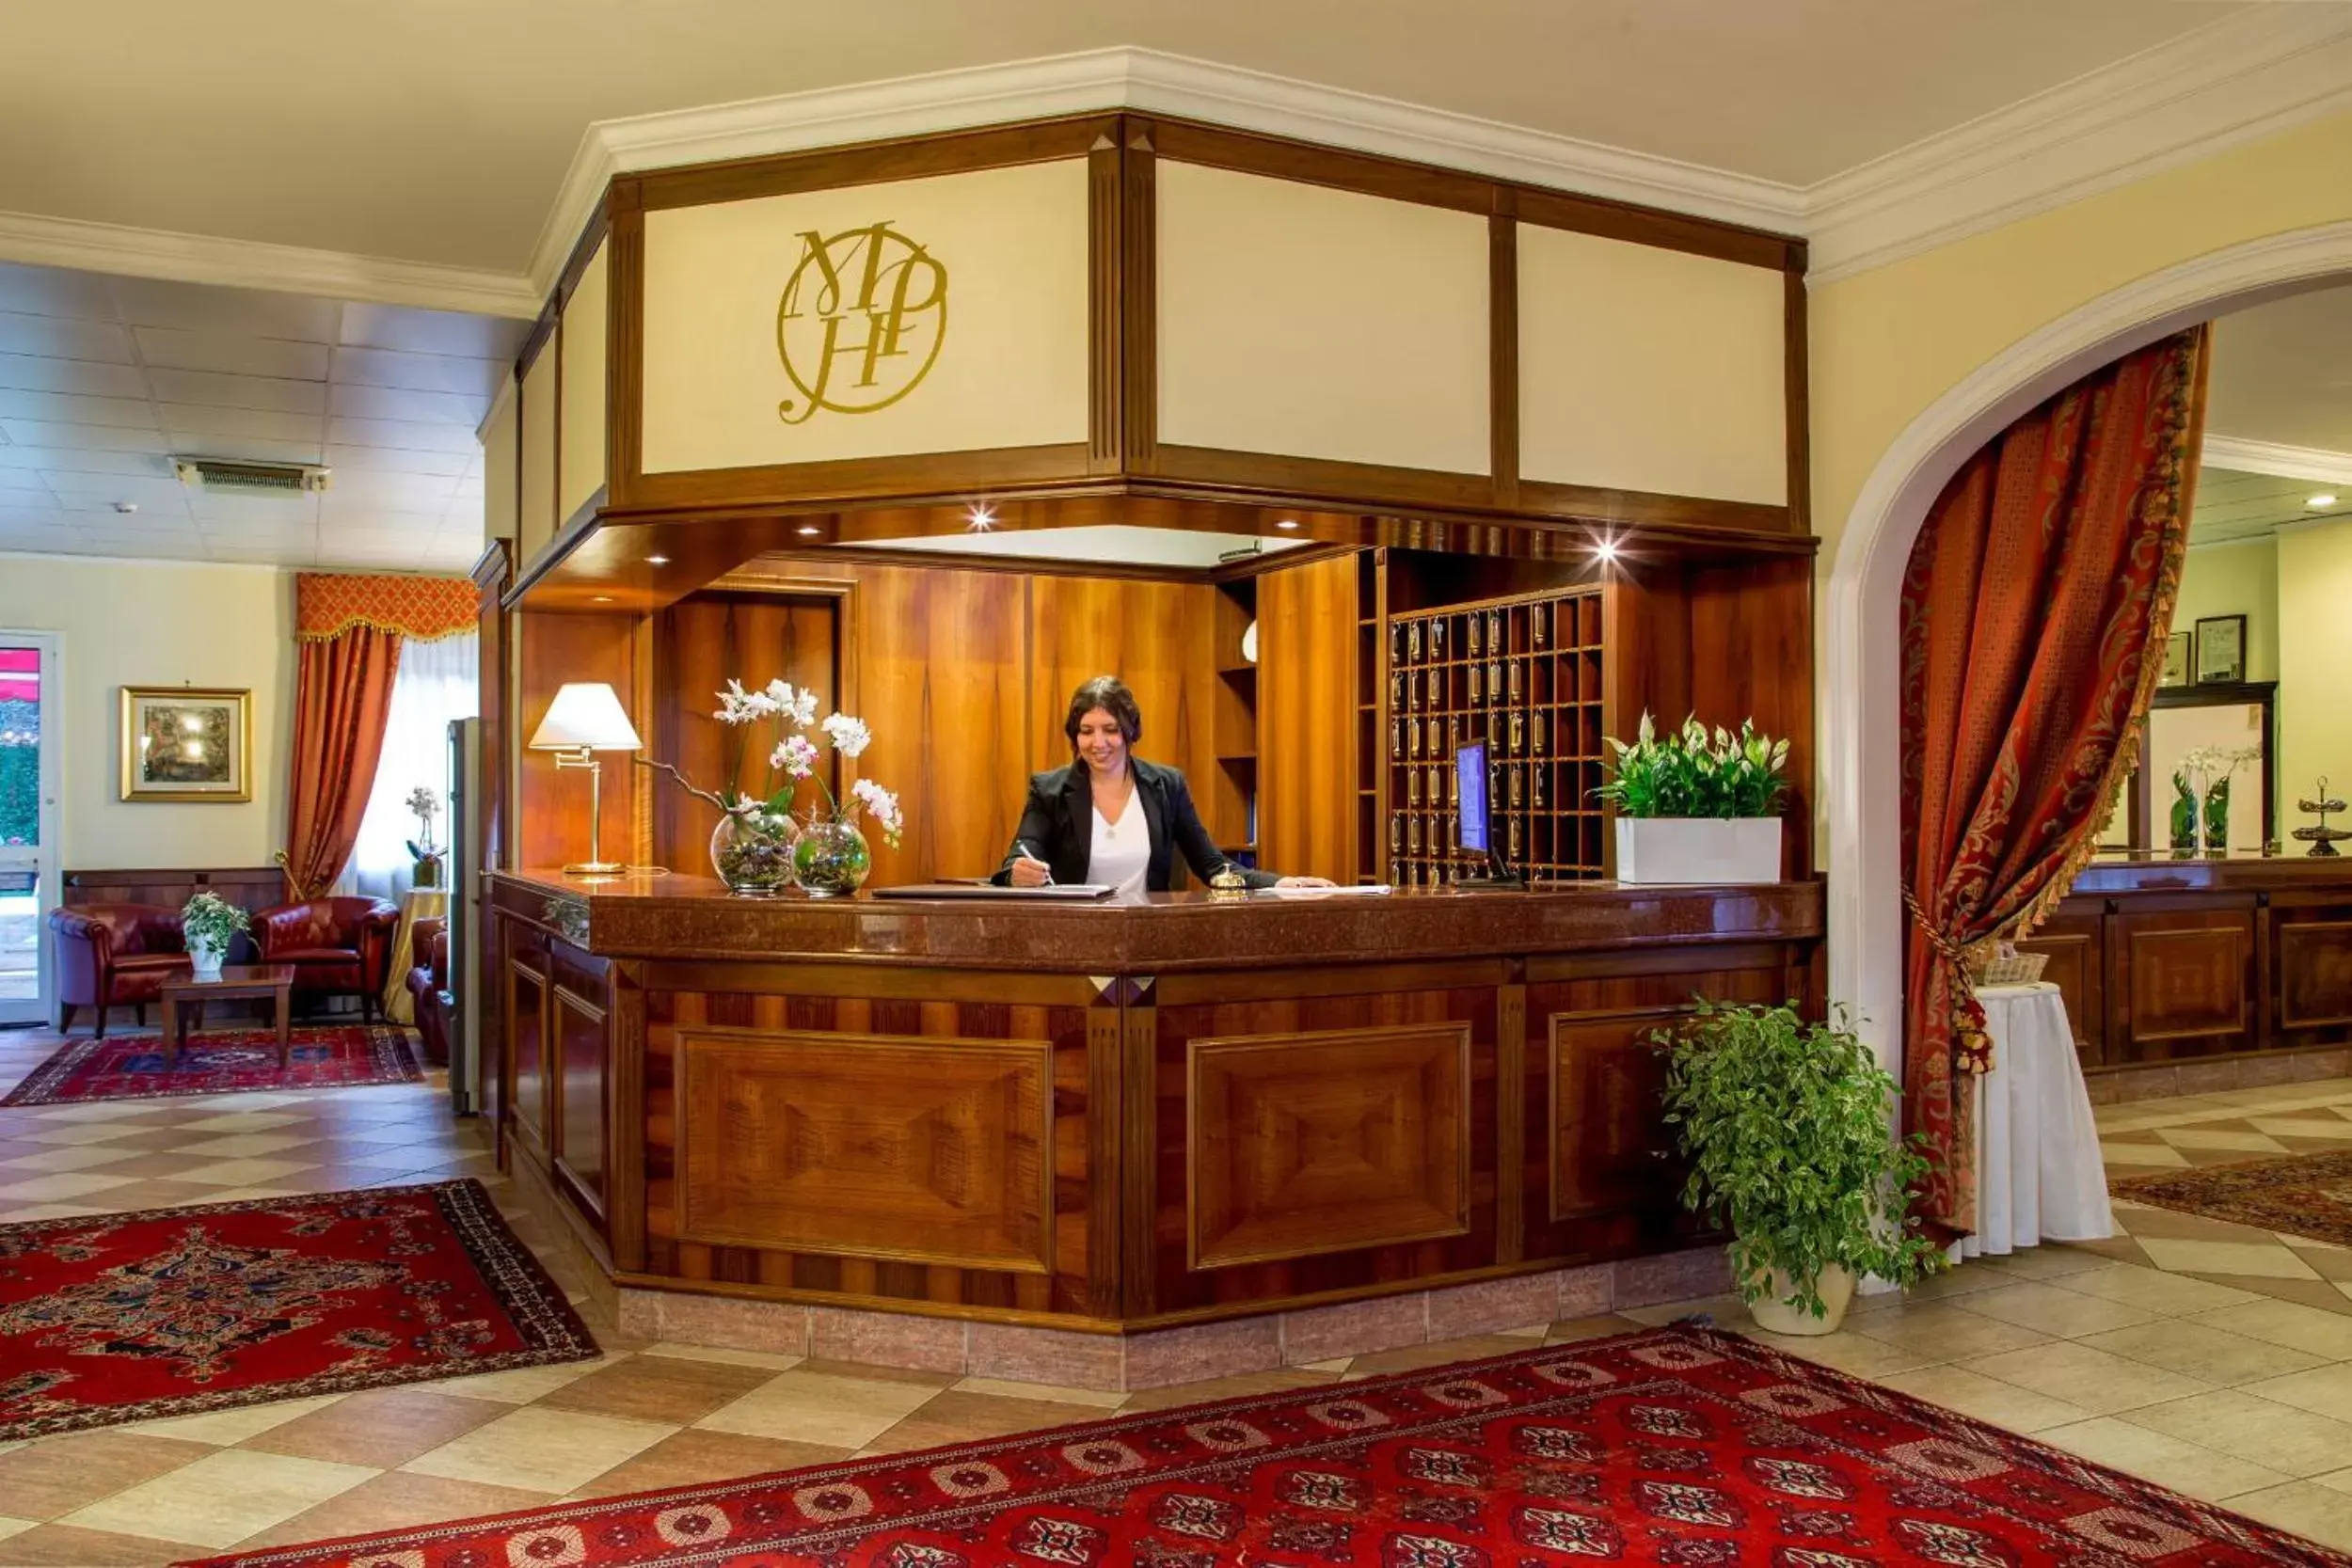 Lobby or reception, Lobby/Reception in Marini Park Hotel